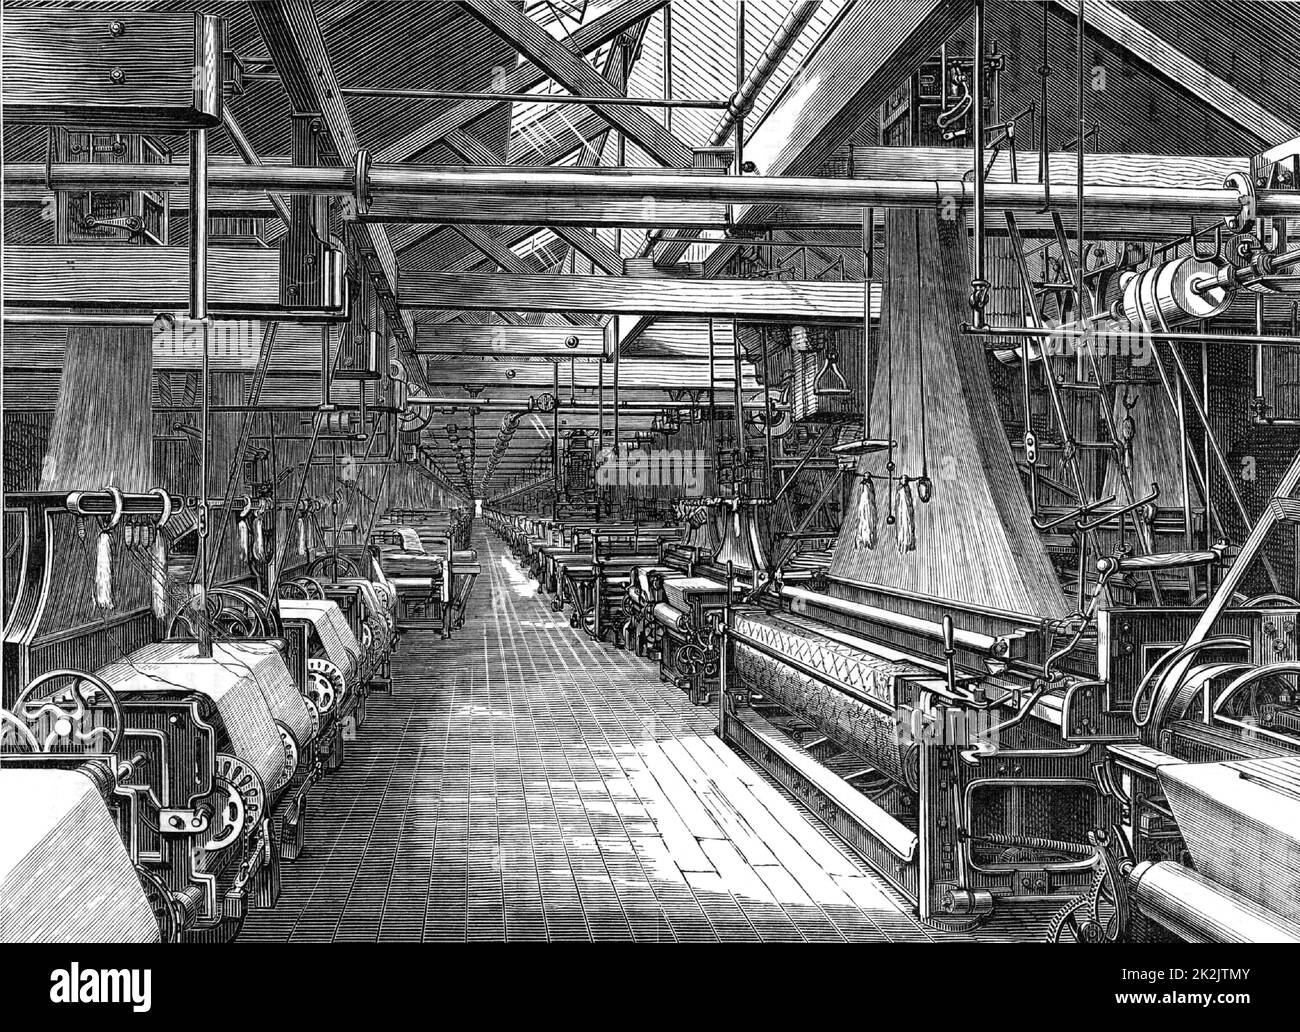 Weaving Shed, St Leonard's Factory von Erskine Beveridge & Company, Dunfermline, Schottland. In diesem Schuppen befanden sich fast 1.000 Jacquard-Webstühle zum Weben von Leinendamast. Der Riemen- und Wellenantrieb, der die Leistung von einer entfernten Dampfmaschine auf die Webstühle überträgt, ist deutlich sichtbar. Aus „Great Industries of Great Britain“ (London, c1880). Gravur. Stockfoto